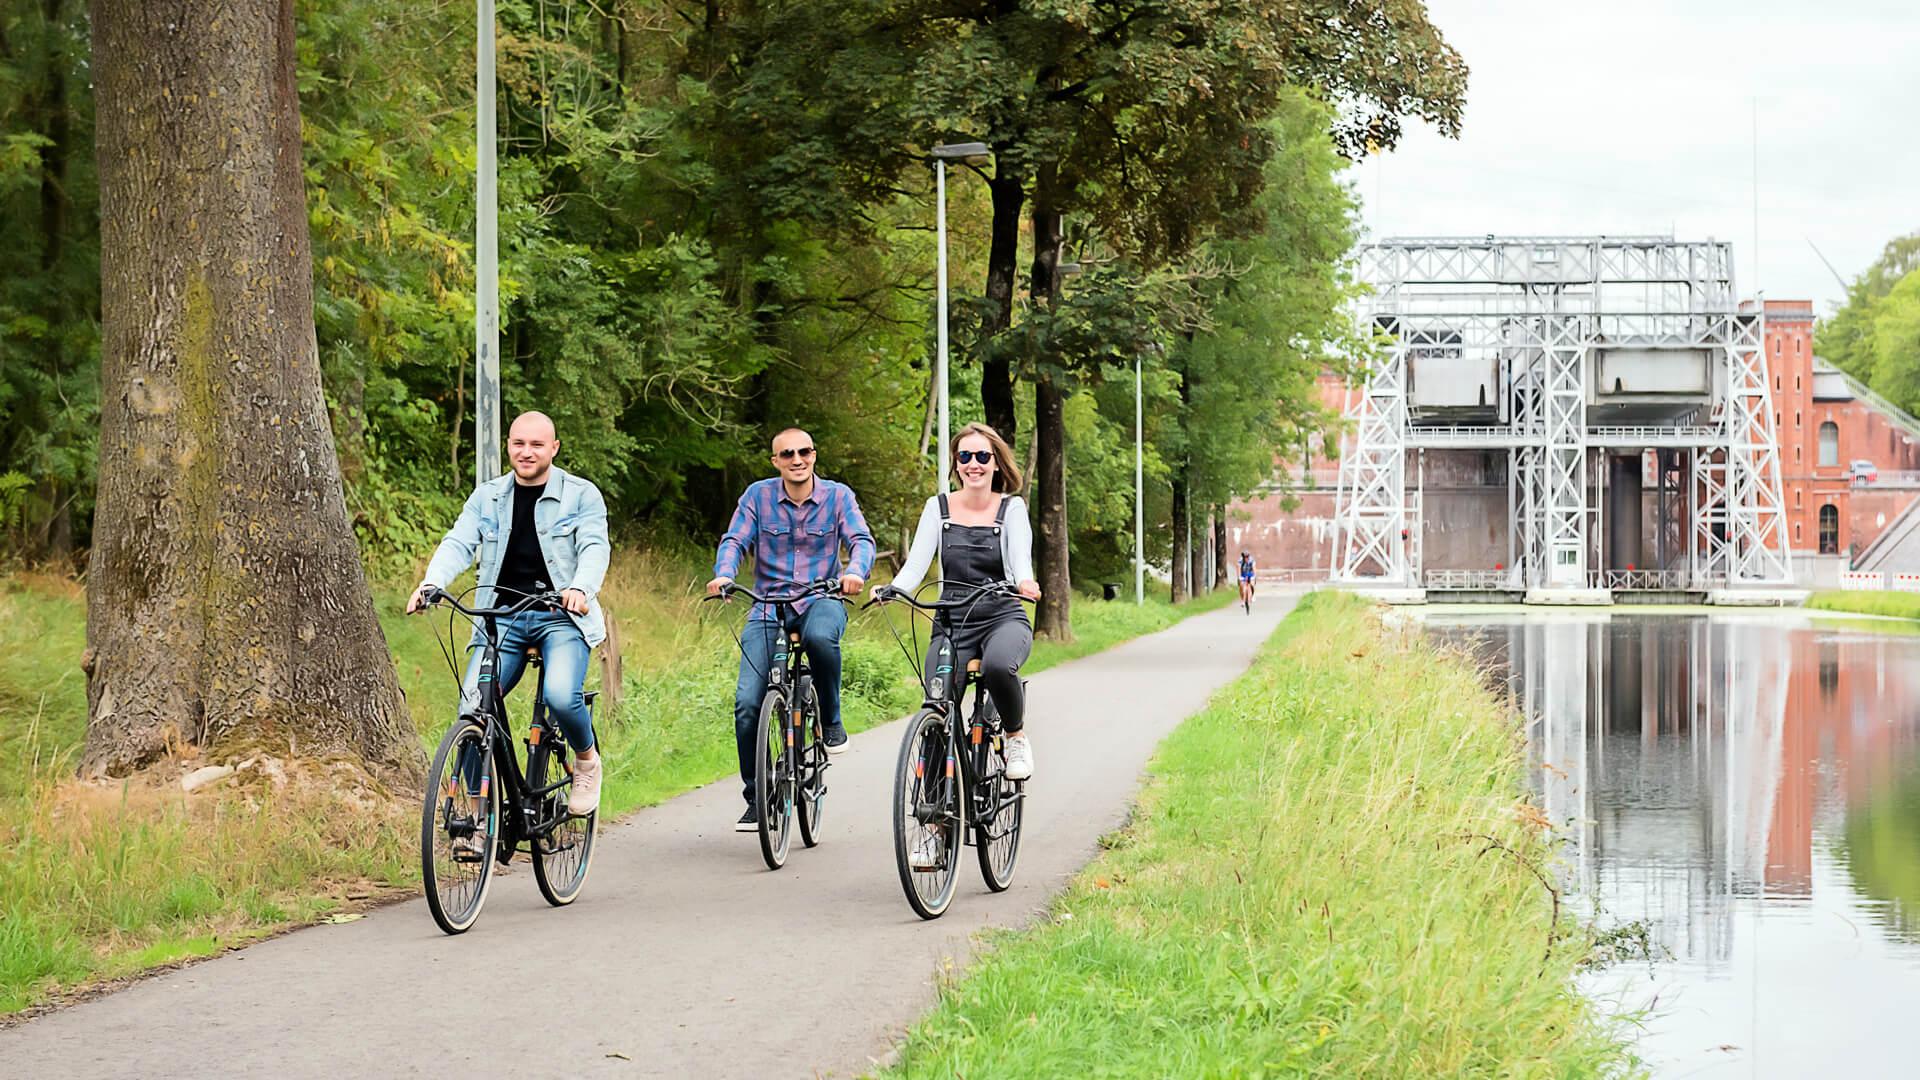 Touristes sur des vélos de location le long du Canal du Centre © Utopix Vhello